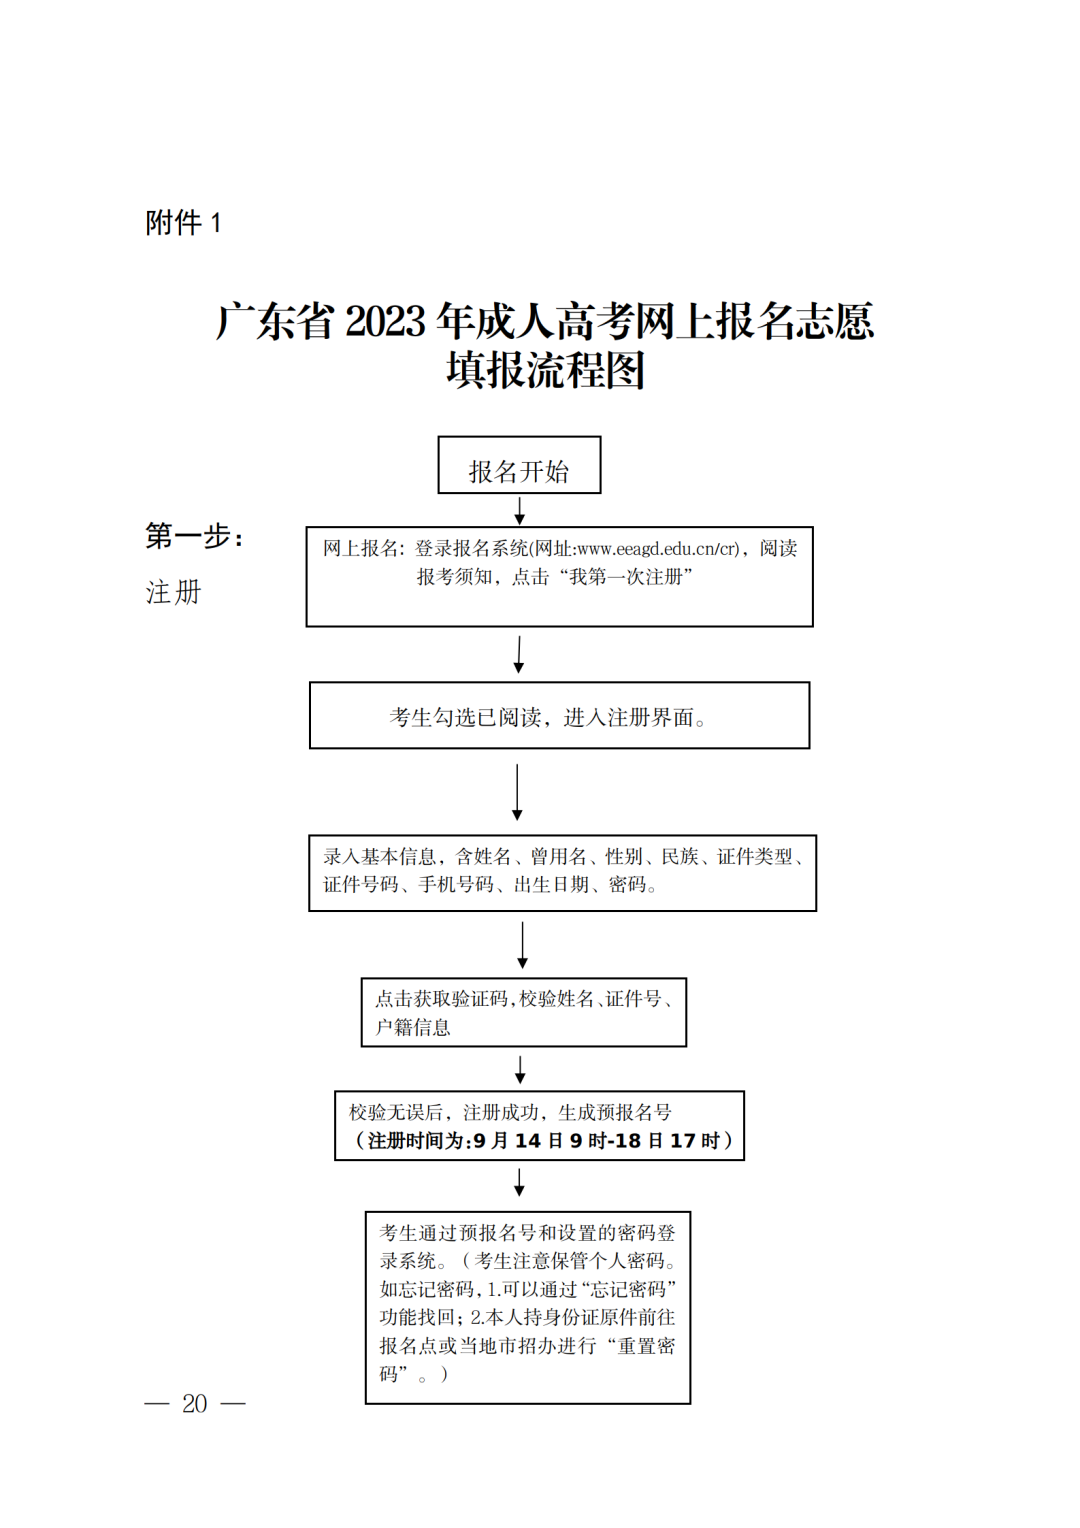 （深教〔2023〕198号）深圳市教育局关于做好深圳市2023年成人高考报名工作的通知_20.png